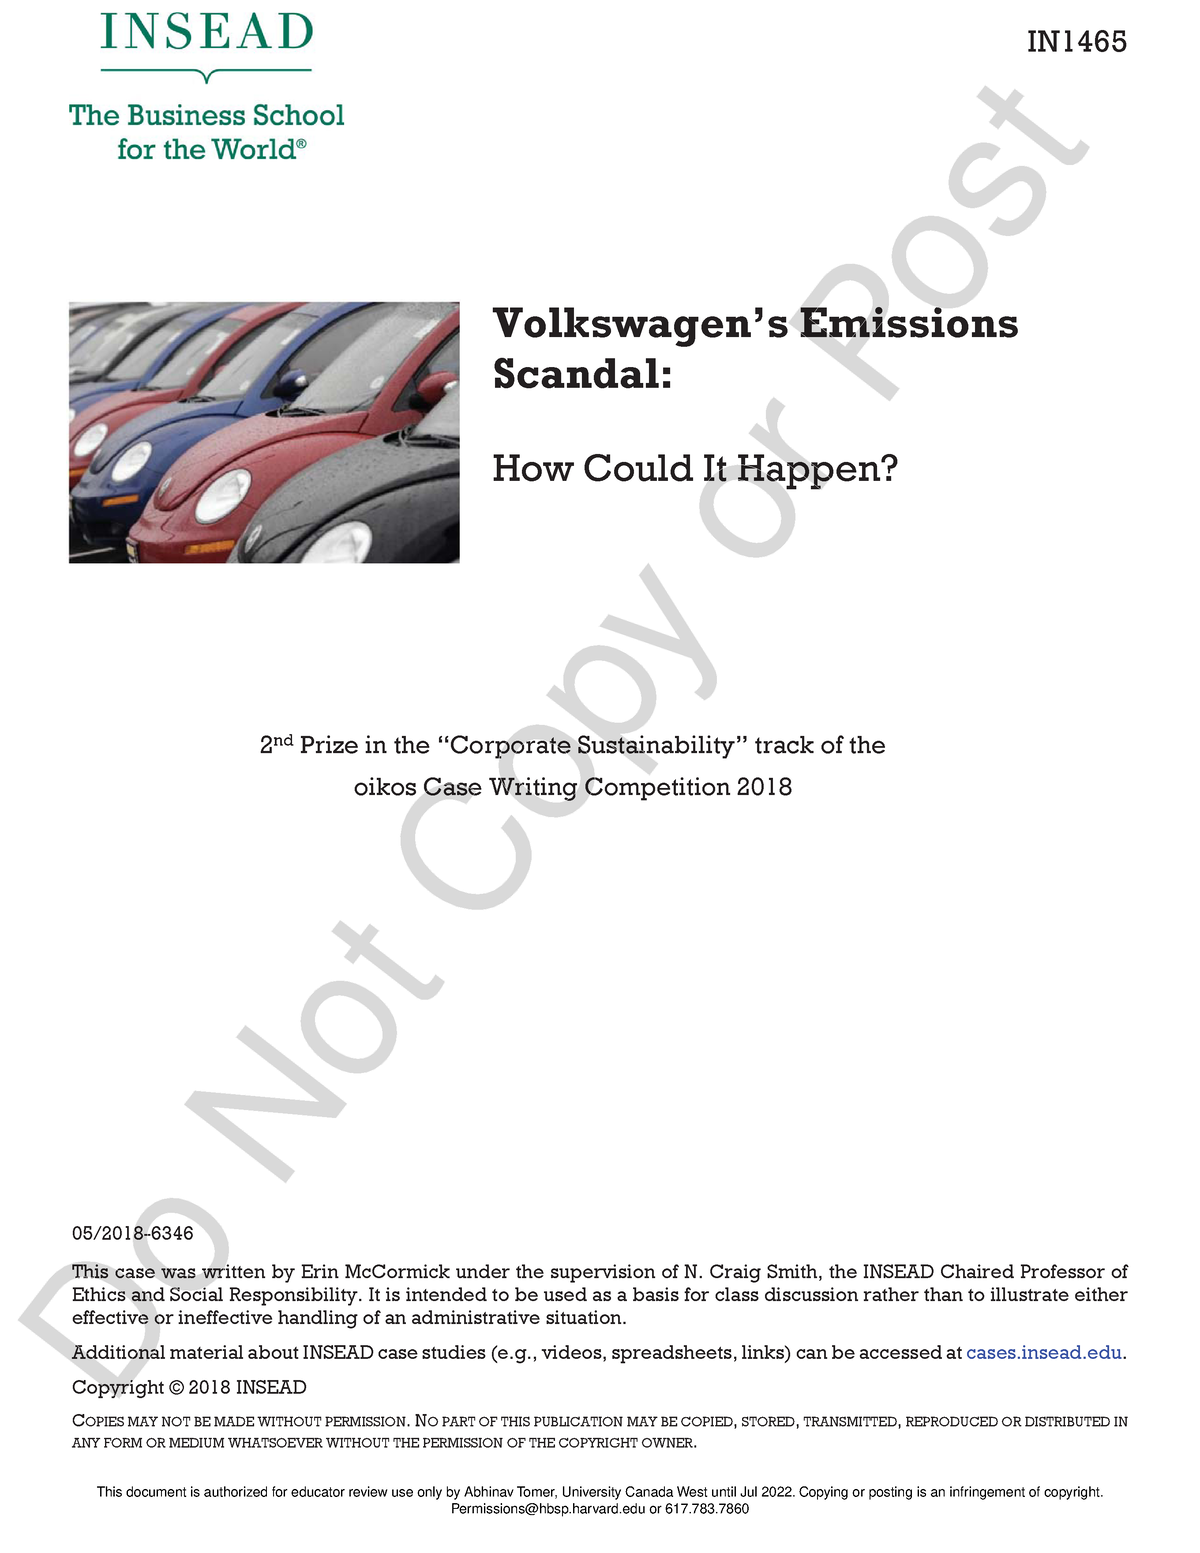 volkswagen scandal case study ppt